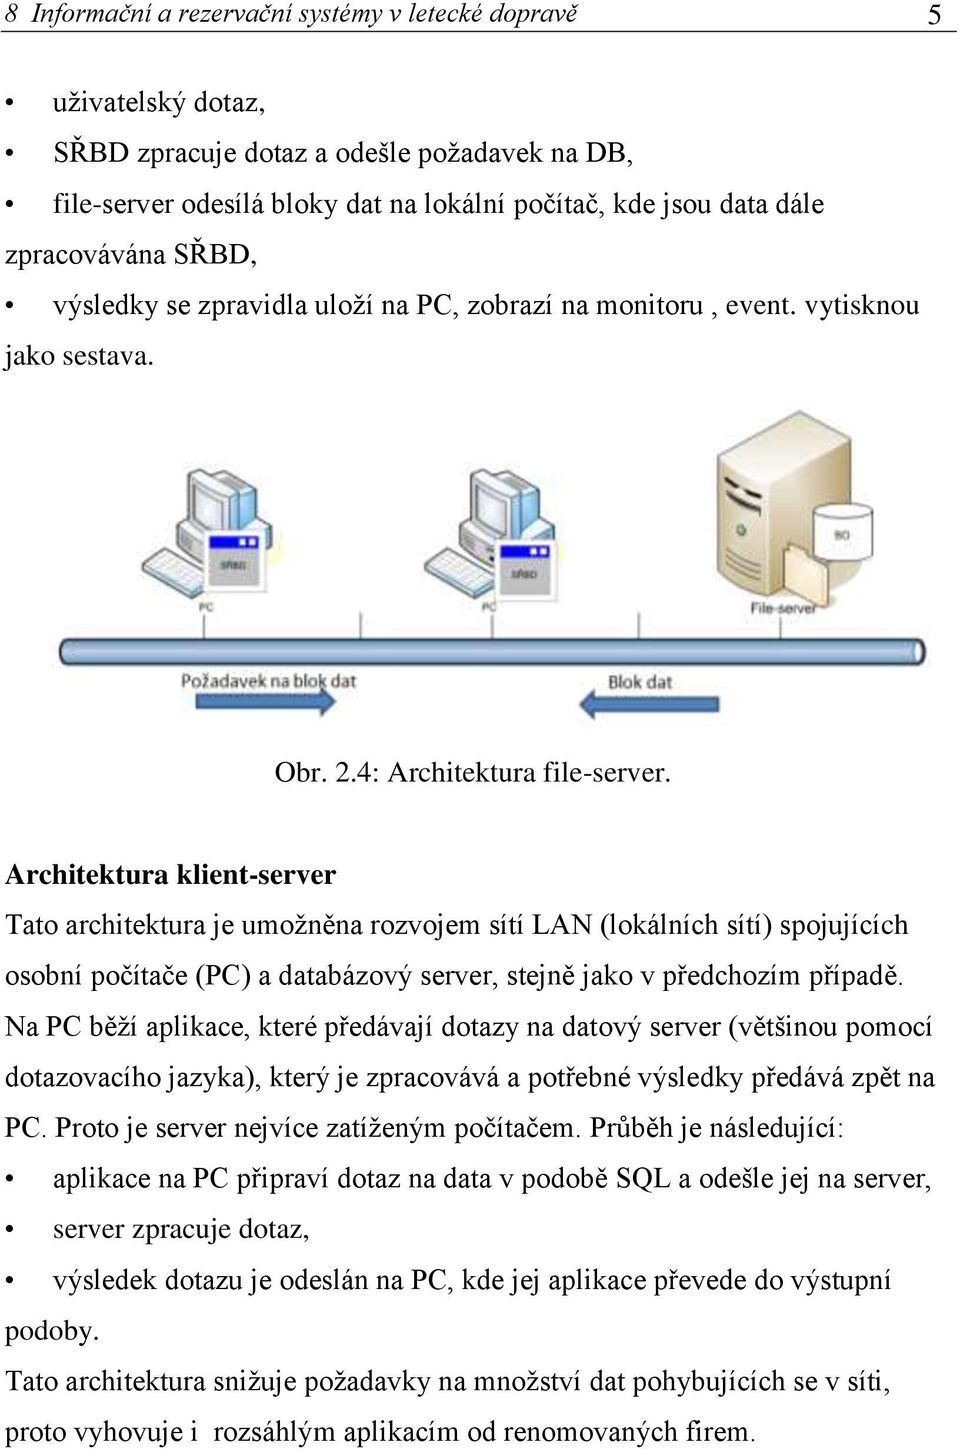 Architektura klient-server Tato architektura je umožněna rozvojem sítí LAN (lokálních sítí) spojujících osobní počítače (PC) a databázový server, stejně jako v předchozím případě.